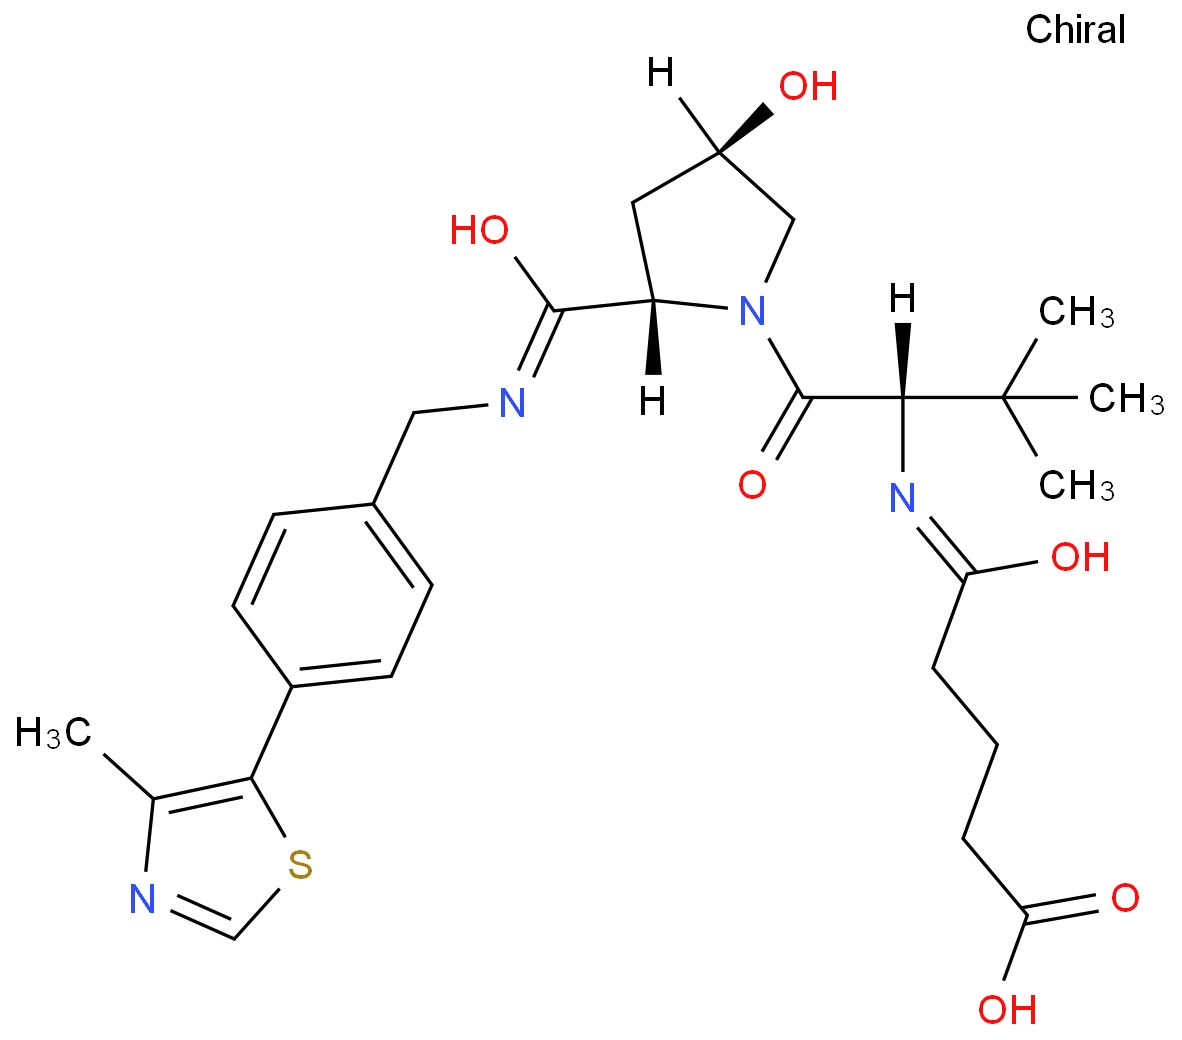 (S,R,S)-AHPC-CO-C3-acid